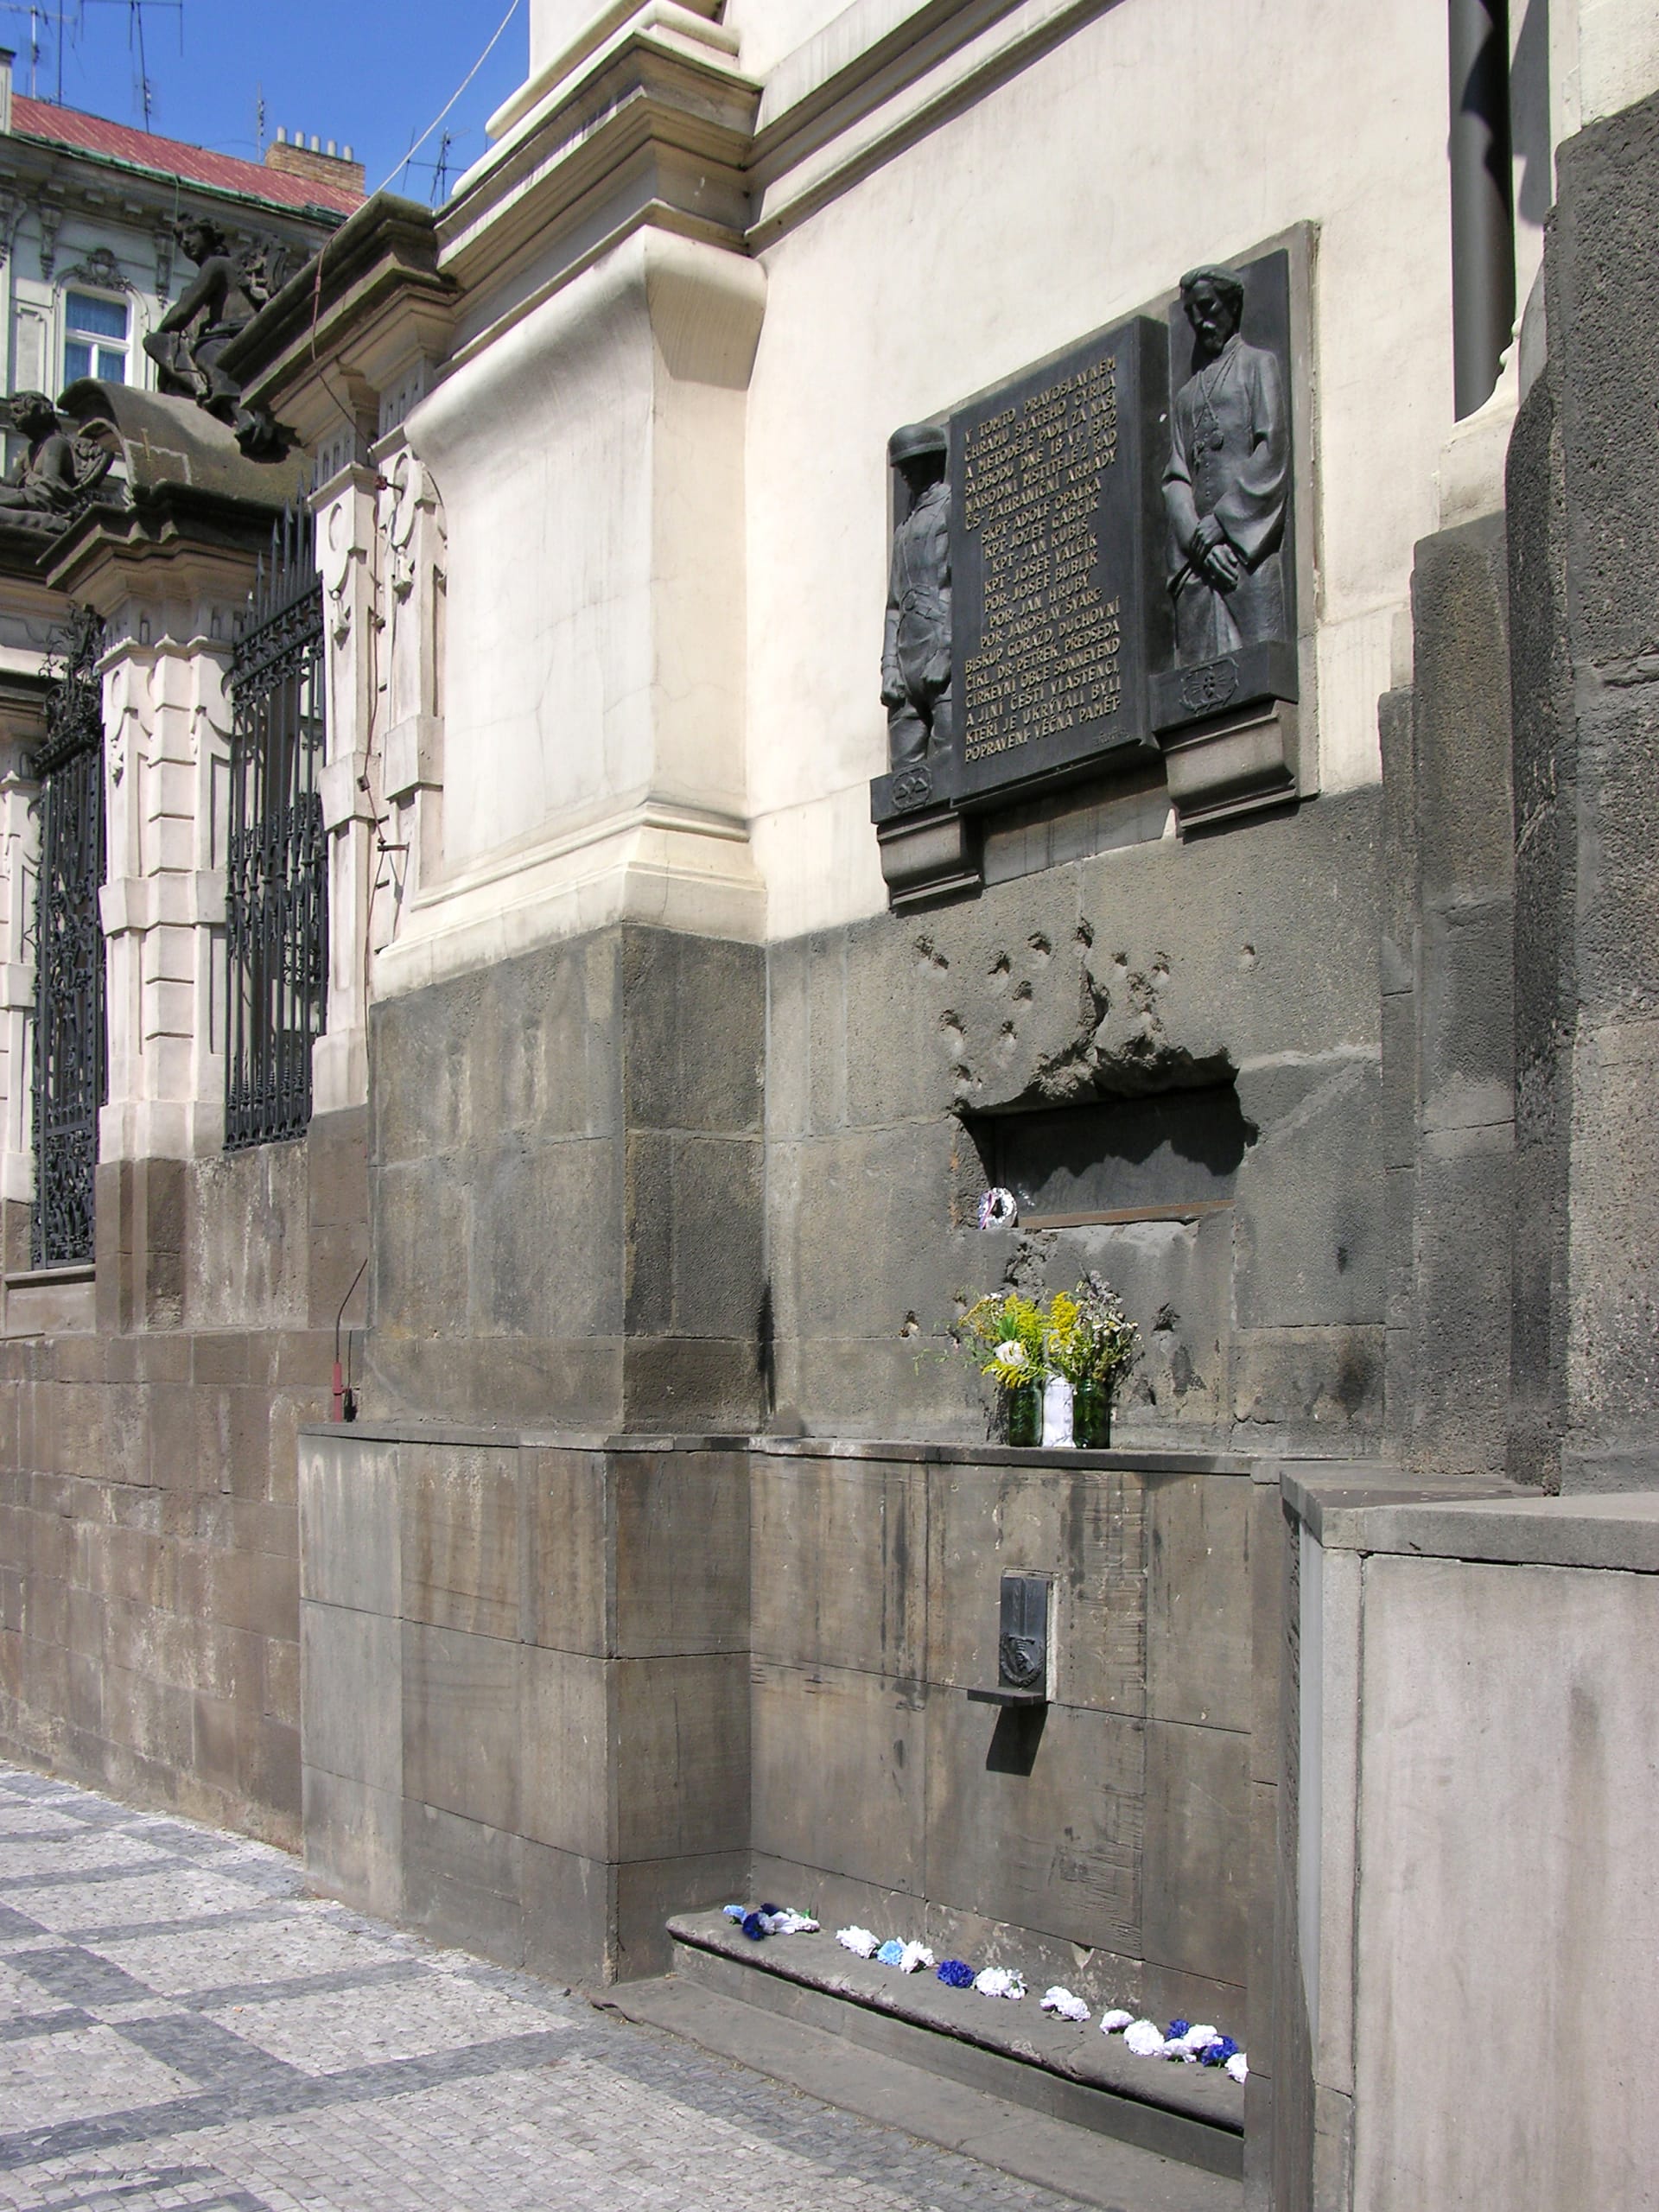 Škvíra do krypty kostela sv. Cyrila a Metoděje, kde skončil život statečných parašutistů.